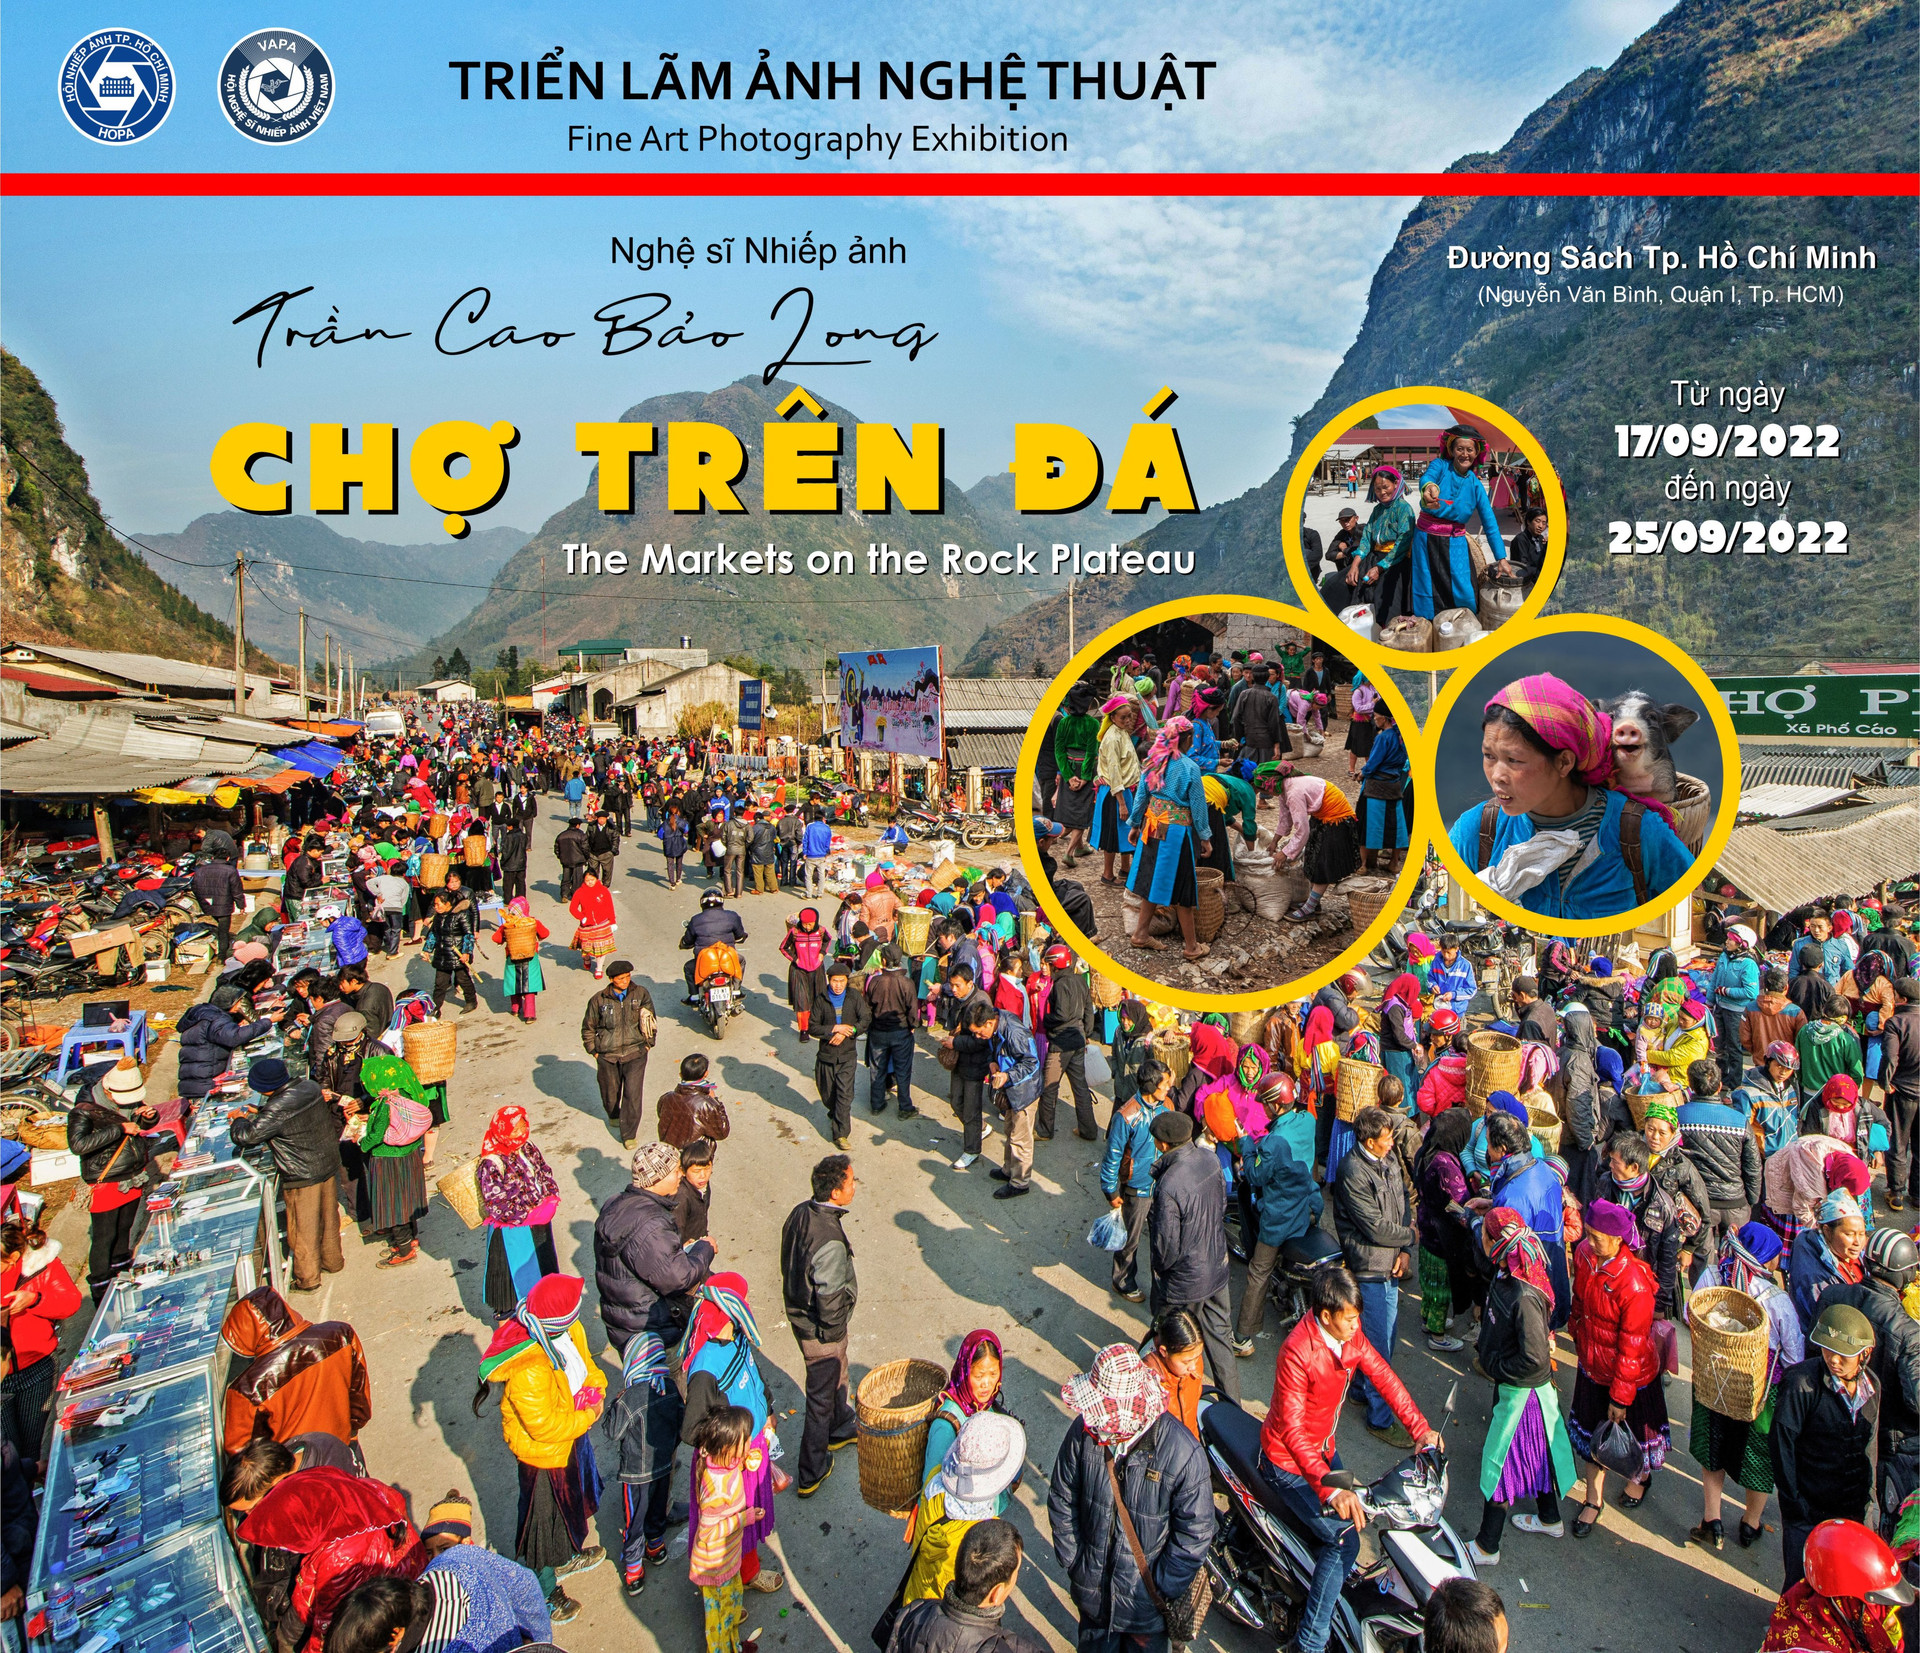 Ngắm nhìn “Chợ trên Đá” qua ống kính của Nghệ sĩ nhiếp ảnh Trần Cao Bảo Long - 1